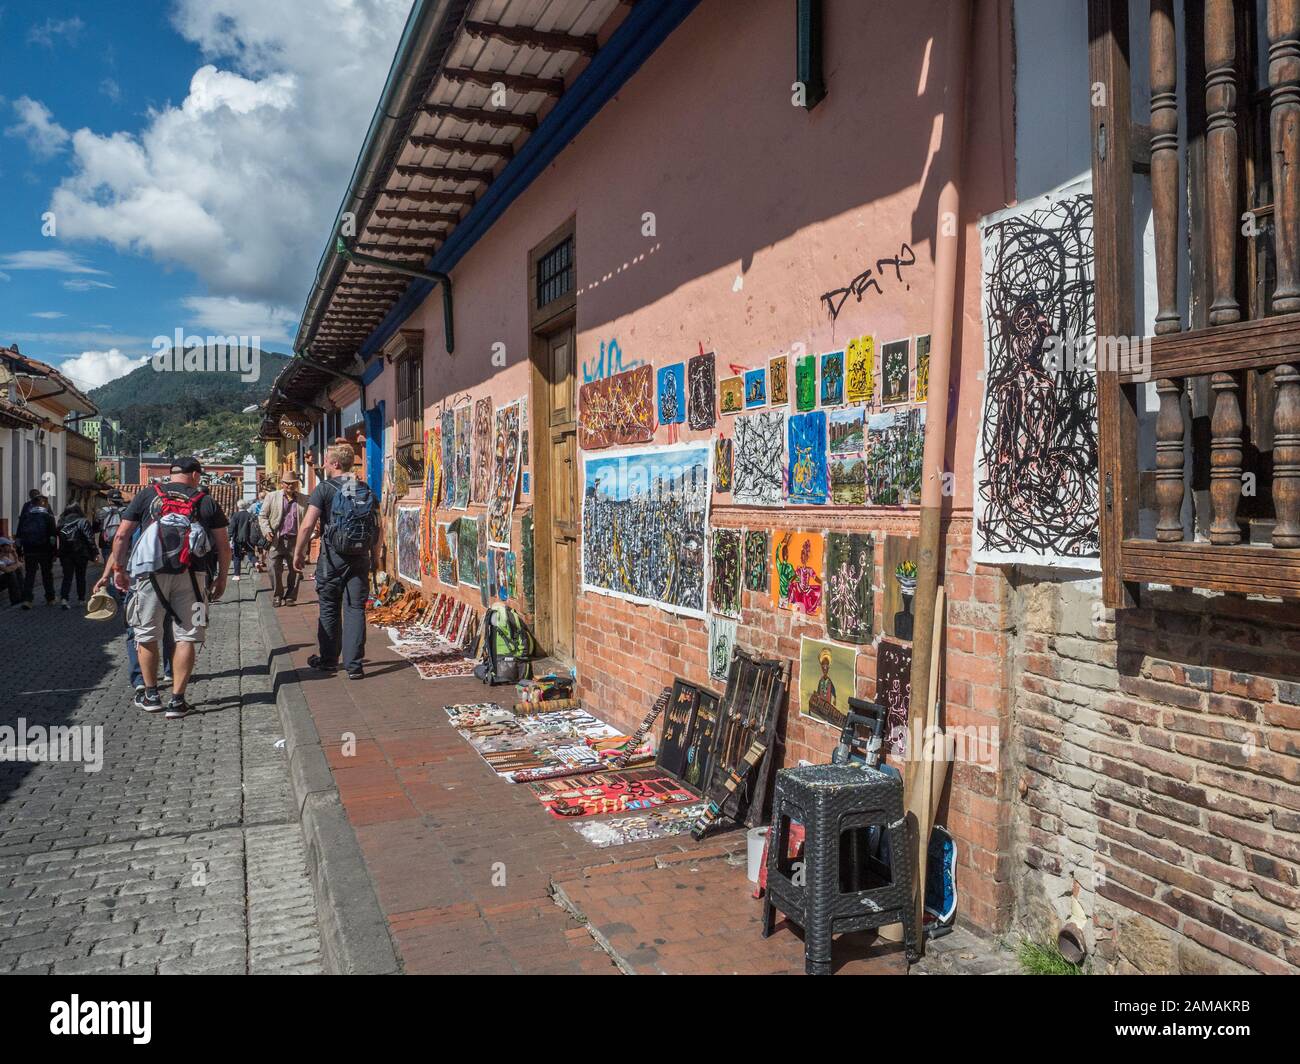 Bogota, Colombie - 12 septembre 2019: Rue de Bogota avec maisons coloniales colorées et vue sur la montagne en arrière-plan, le quartier de la Candelaria. Banque D'Images